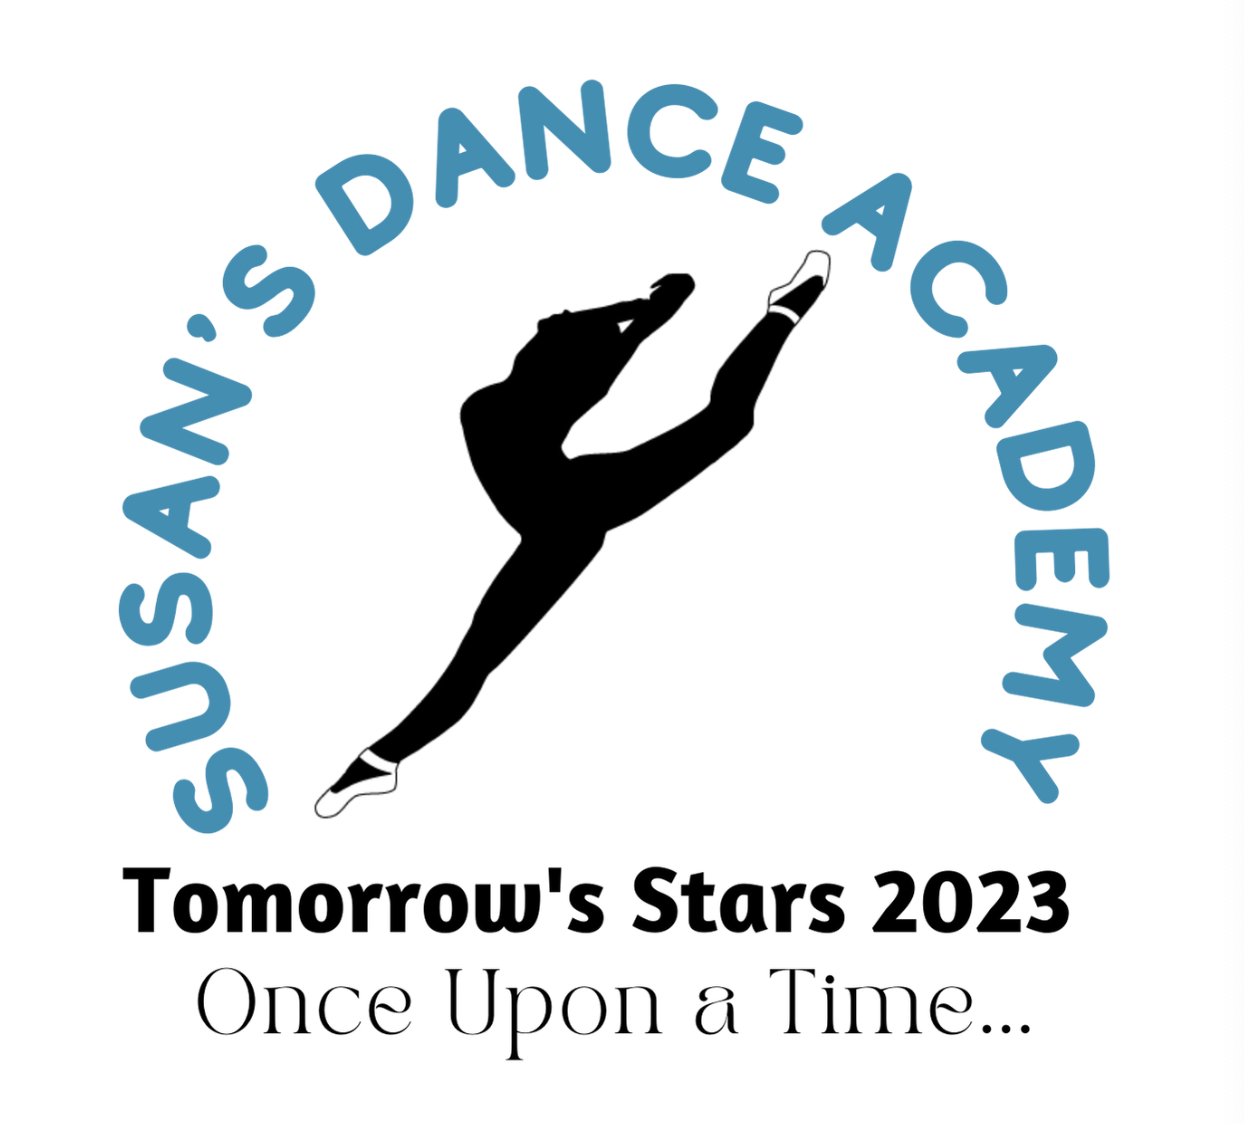 Susan’s Academy of Dance